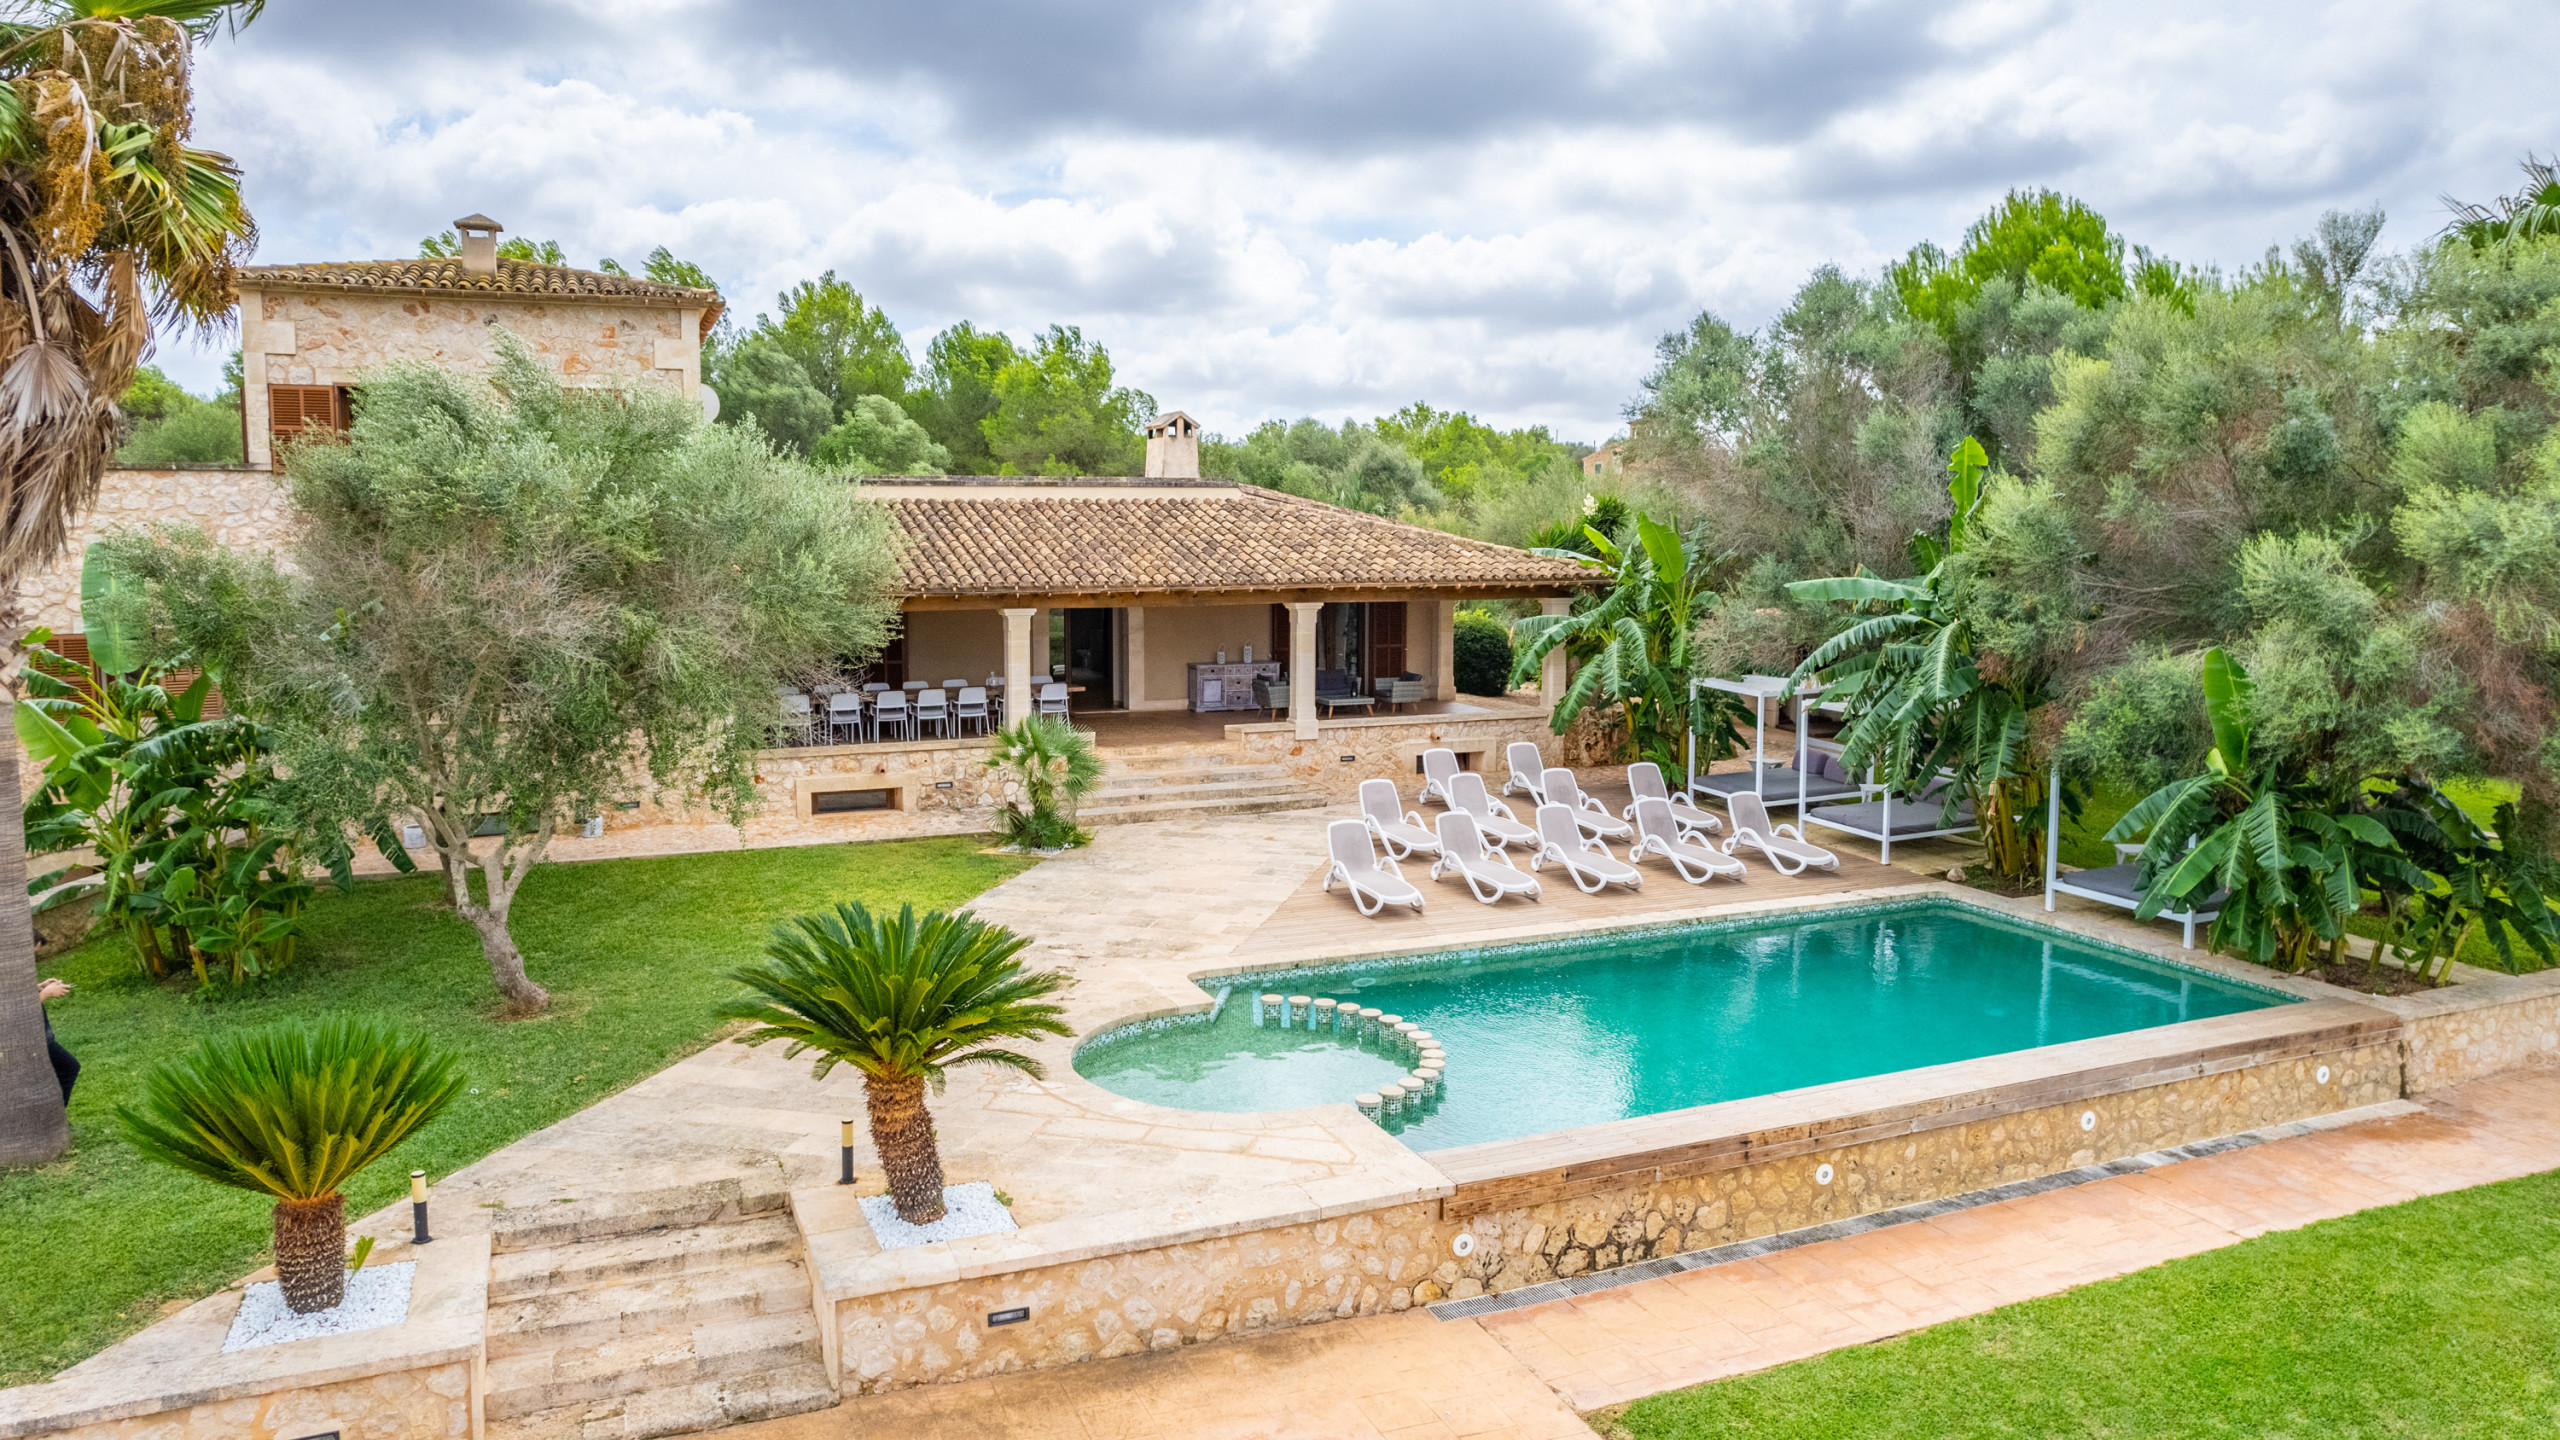 Villa vacacional 5StarsHome, con casa independiente, aire acondicionado, wifi, jardin y piscina privada, playa cercana, Mallorca